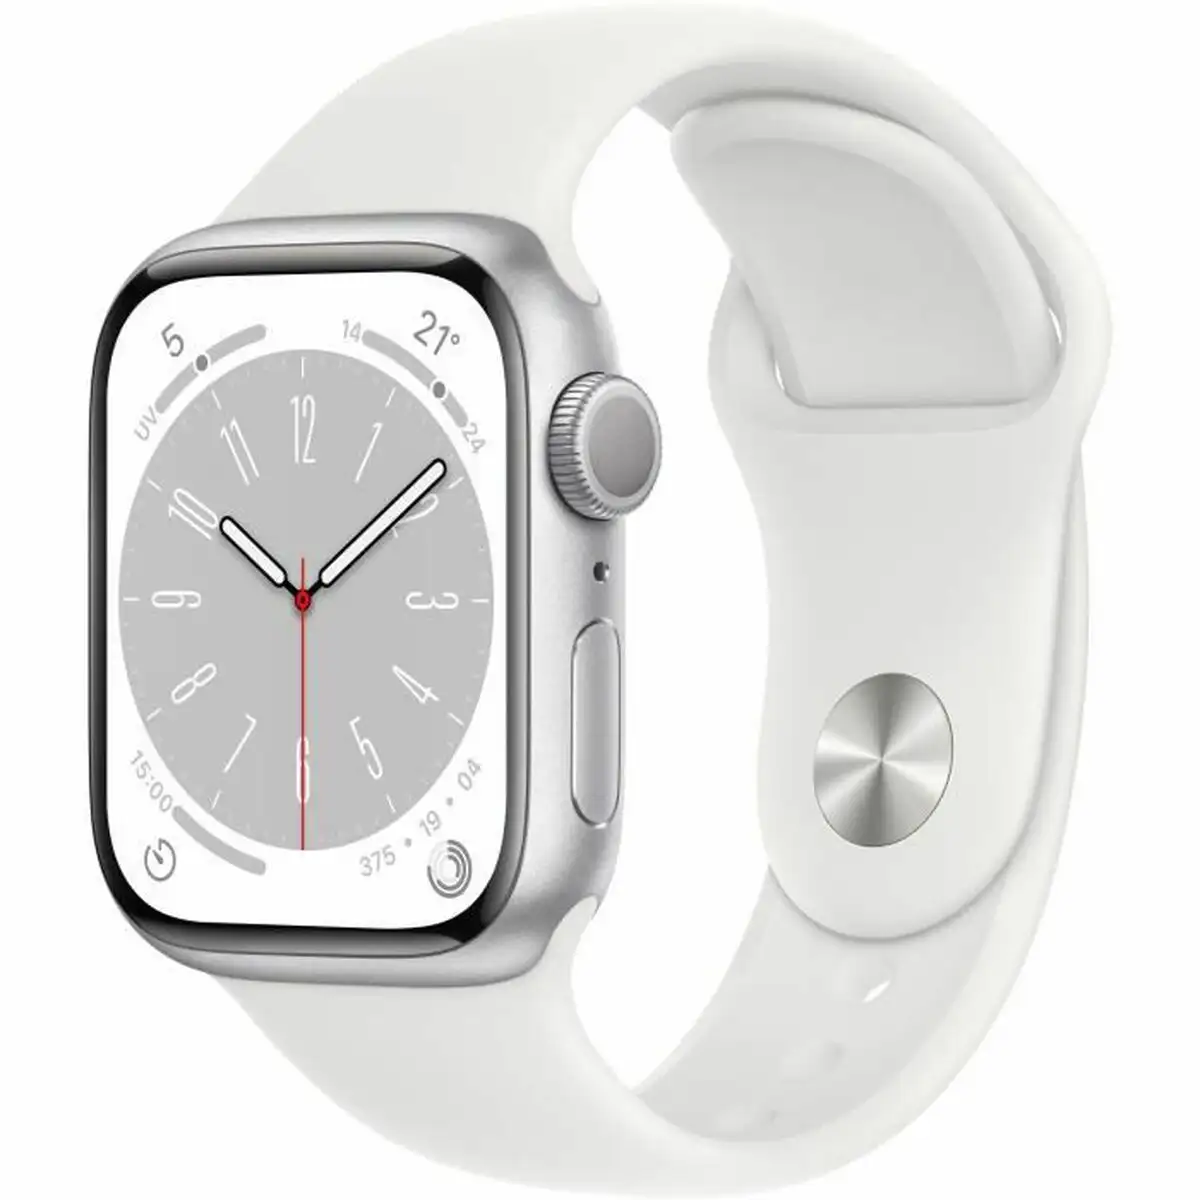 Montre intelligente apple watch series 8 blanc 4g watchos 9_5154. Bienvenue chez DIAYTAR SENEGAL - Où Chaque Achat est un Geste d'Amour. Découvrez notre sélection minutieuse et choisissez des articles qui témoignent de votre passion.